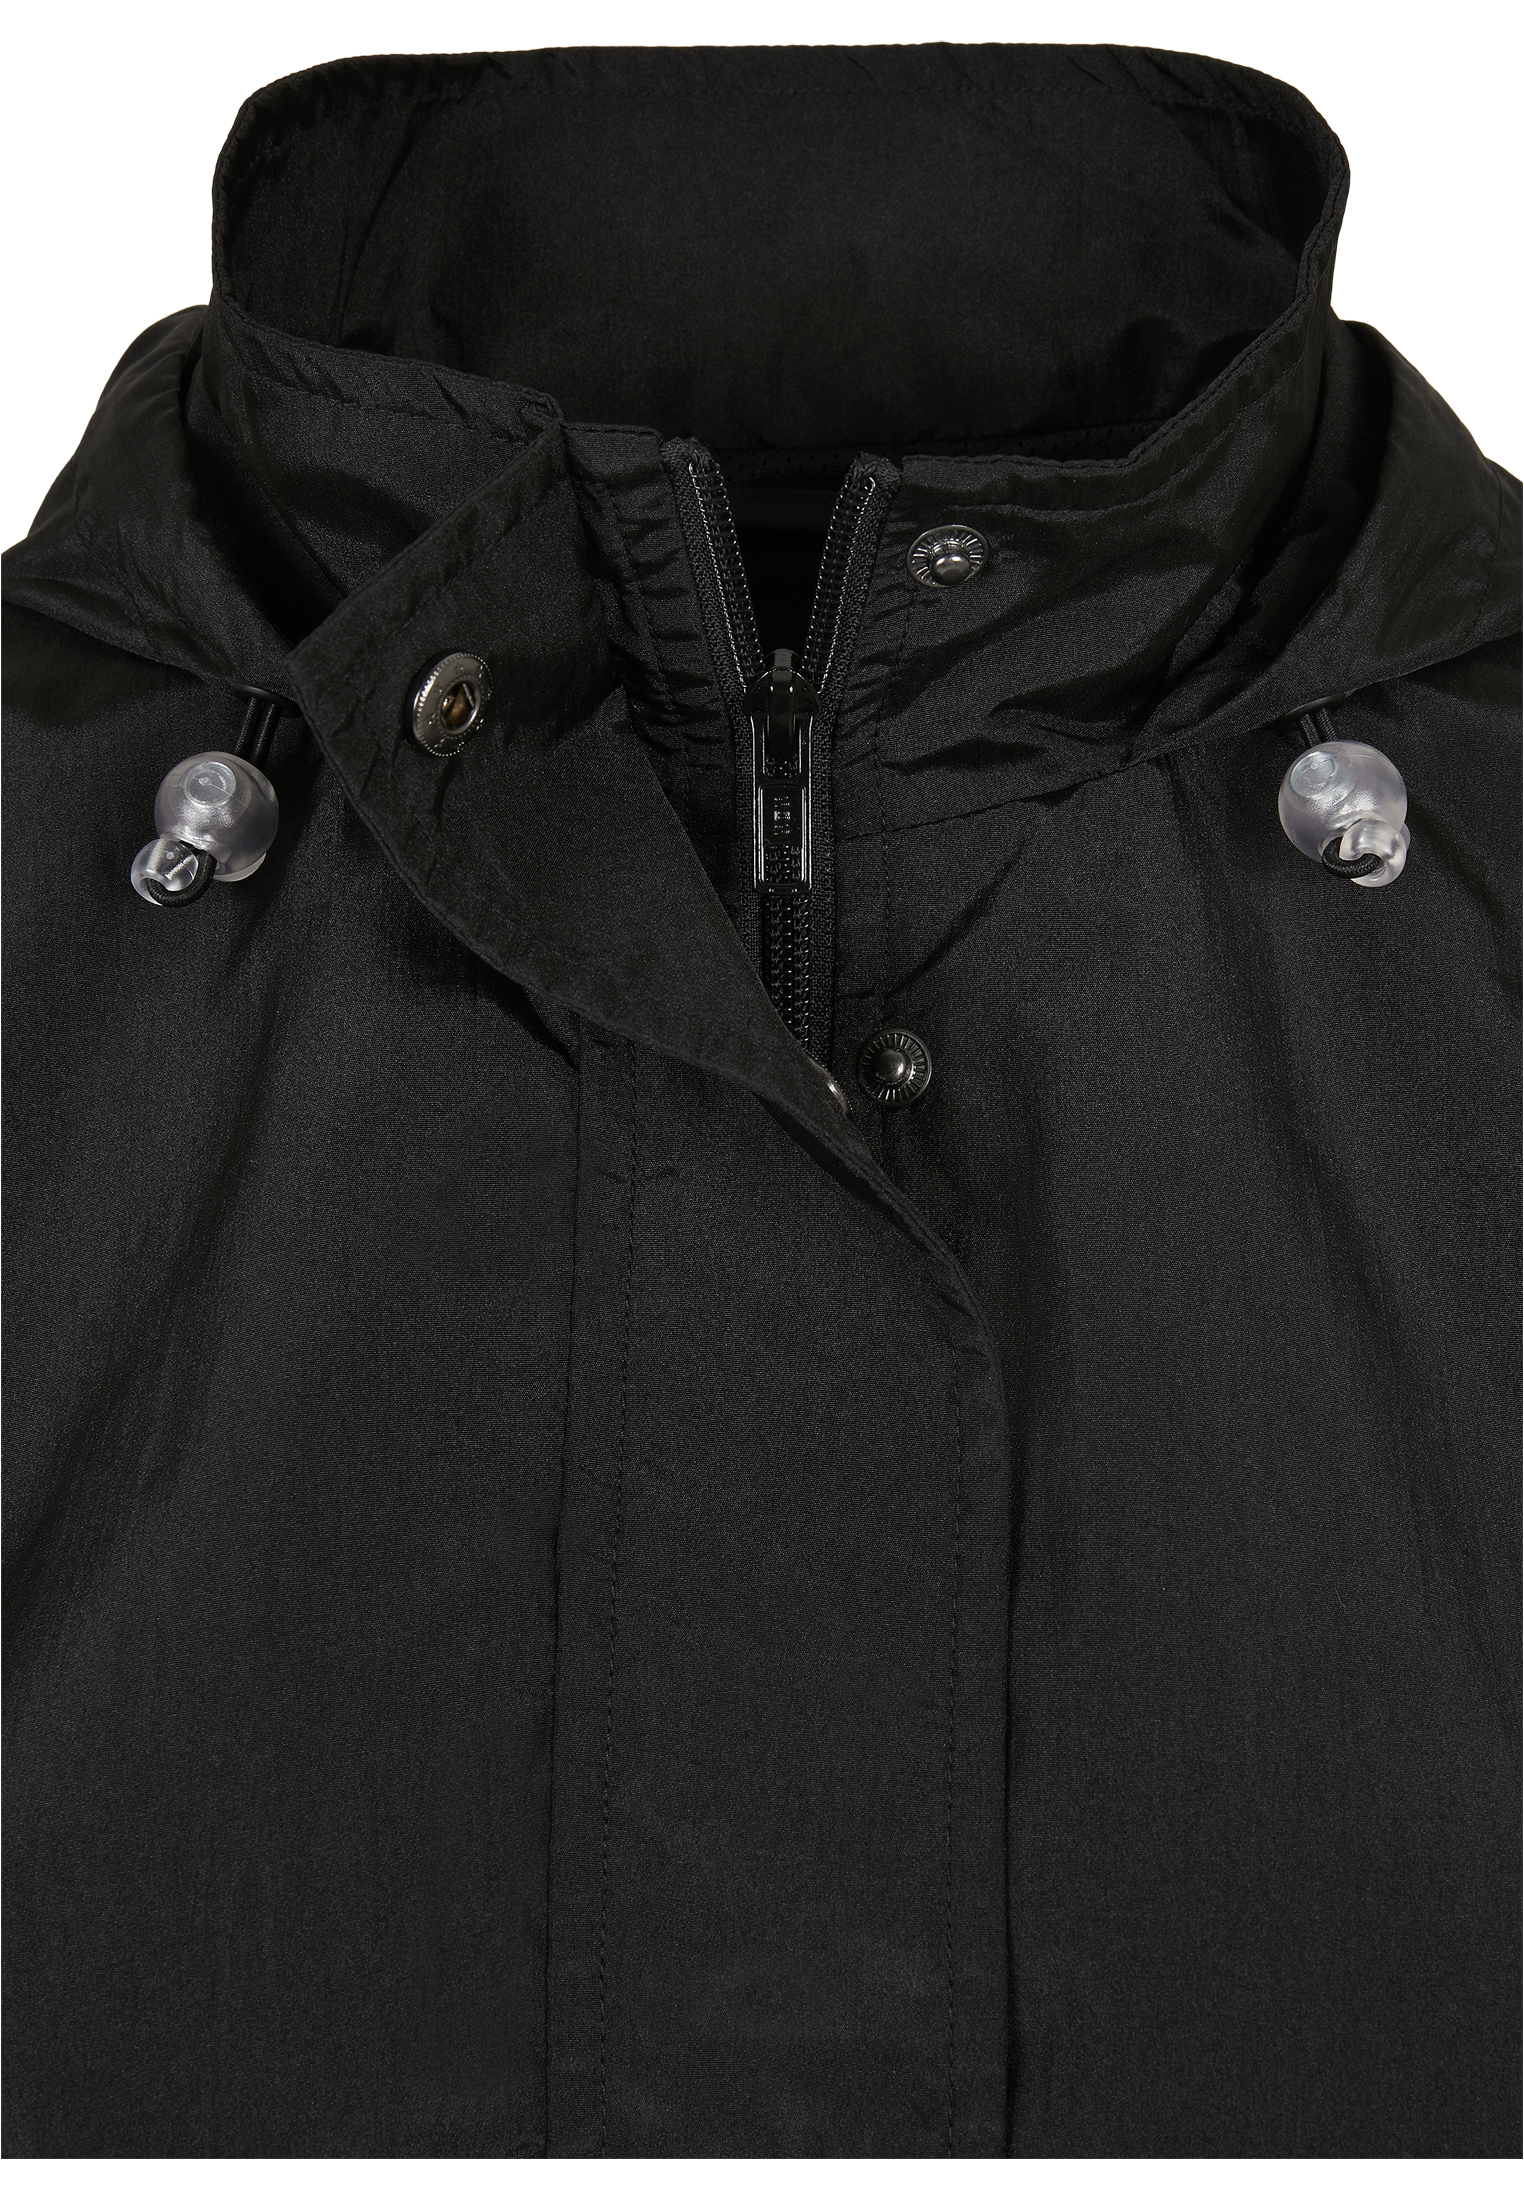 Light Jackets Ladies Oversized Shiny Crinkle Nylon Jacket in Farbe black